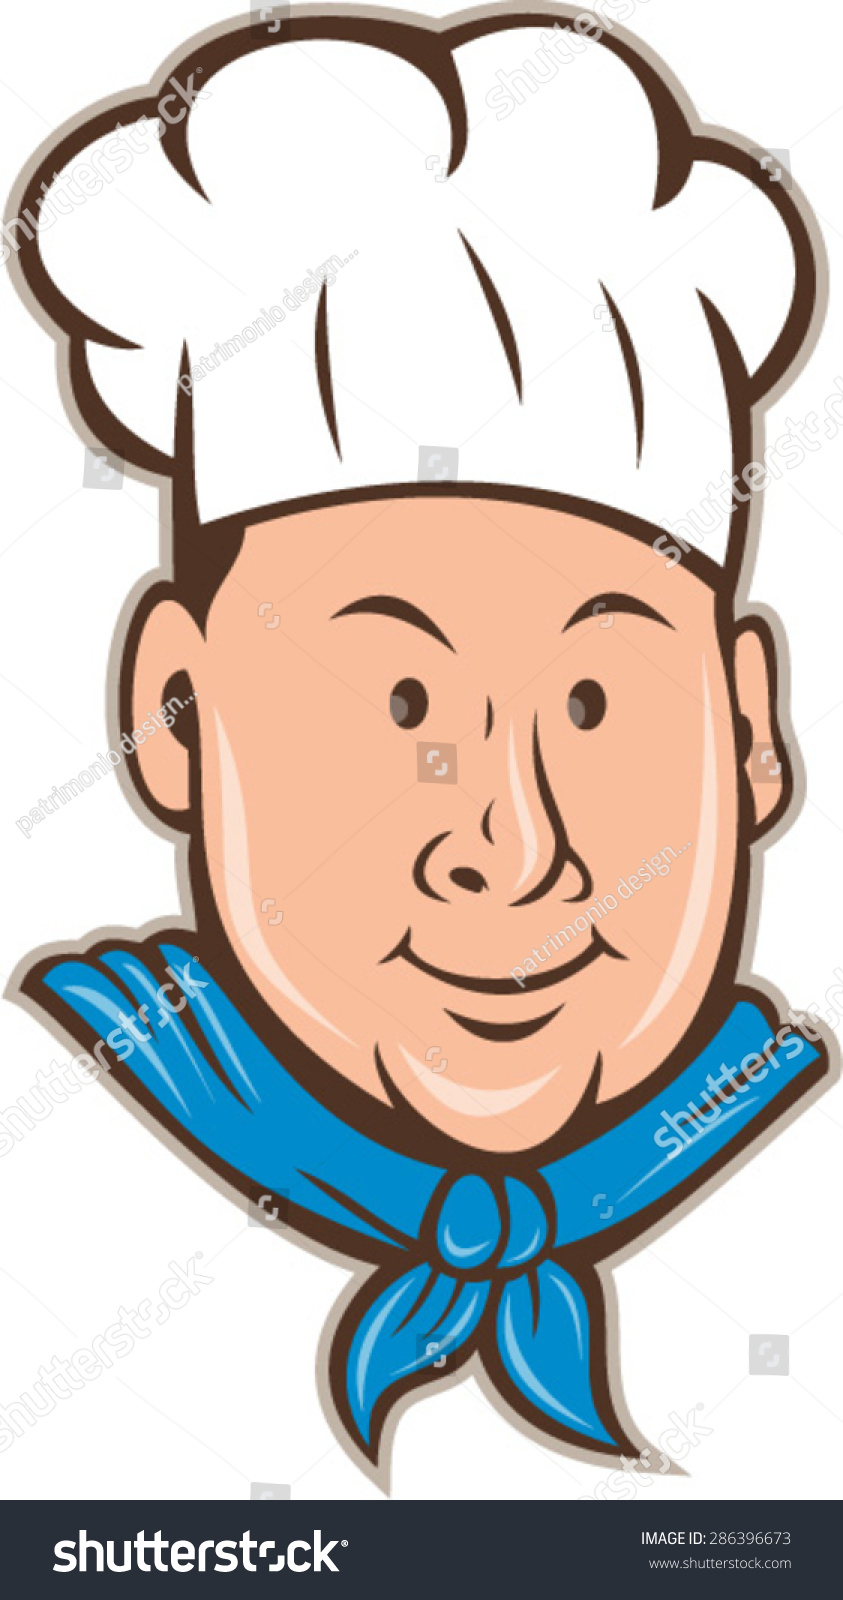 插图的厨师厨师戴着厨师的帽子和围巾快乐微笑